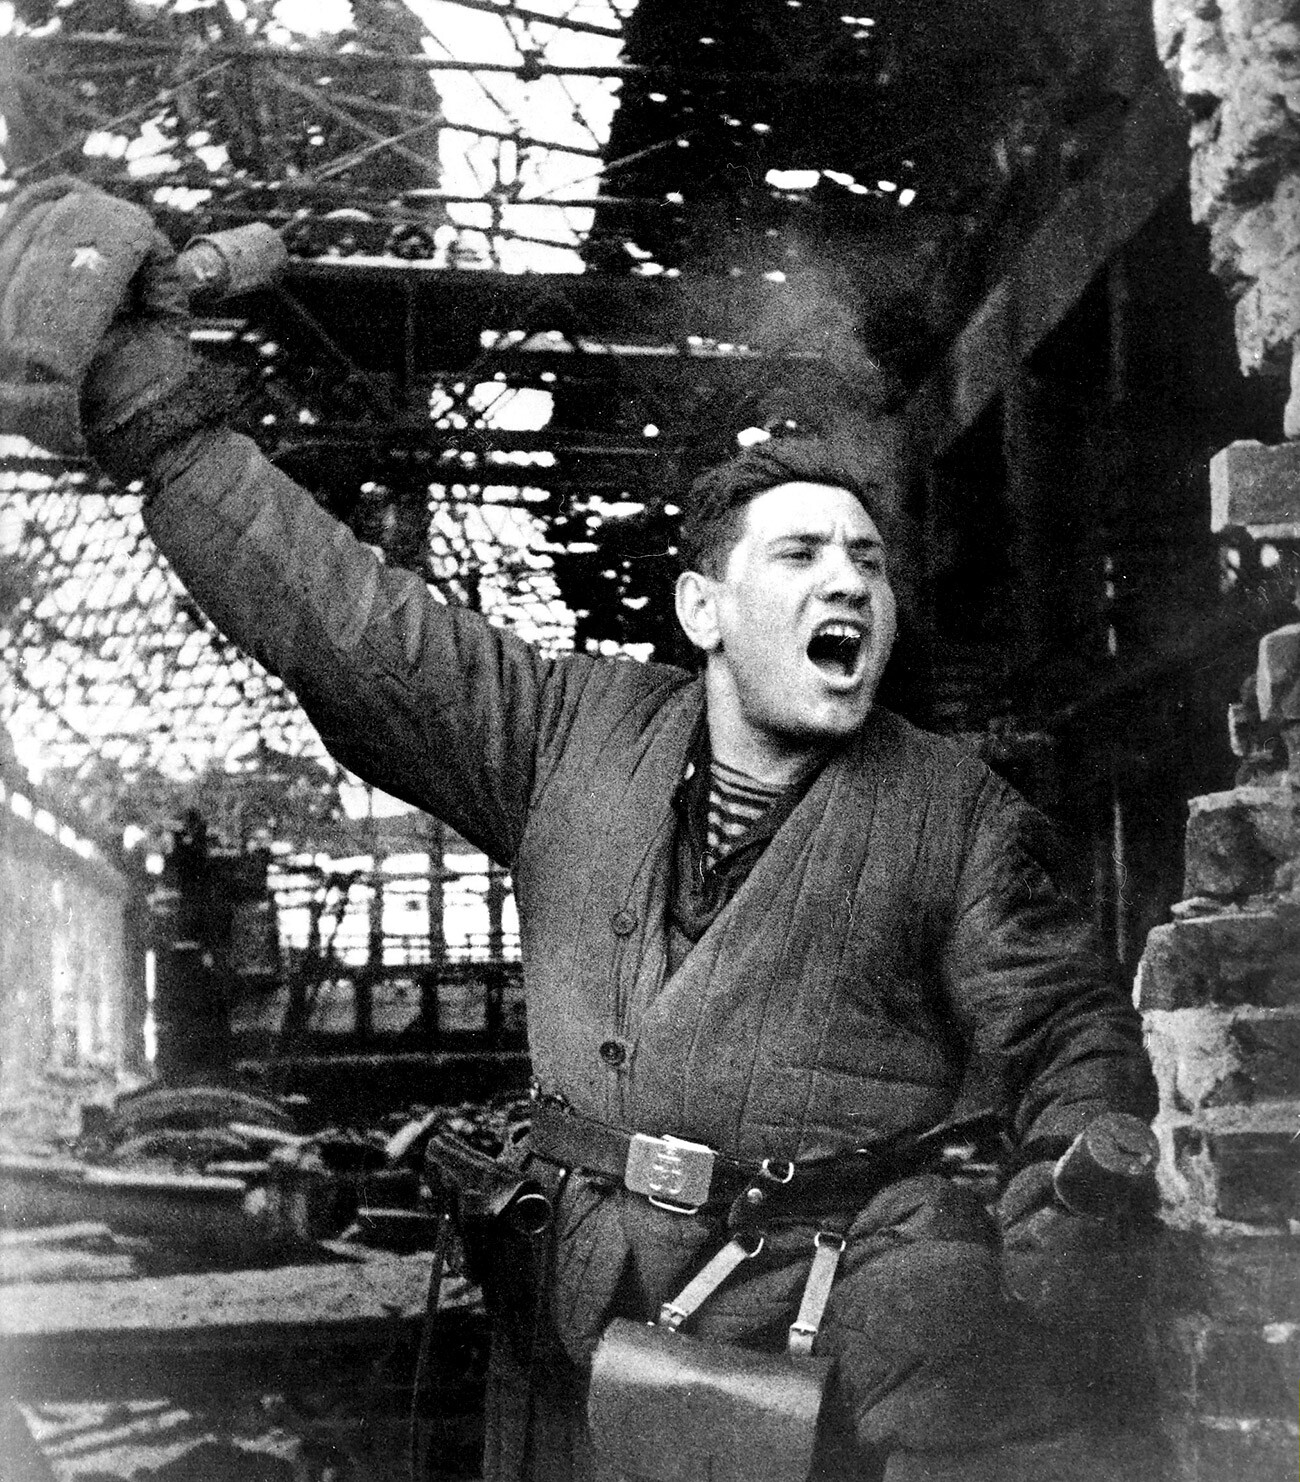 Evropa. DRUGA SVETOVNA VOJNA. Vzhodna fronta / ZSSR. Bitka pri Stalingradu. Sovjetski vojak. 1942